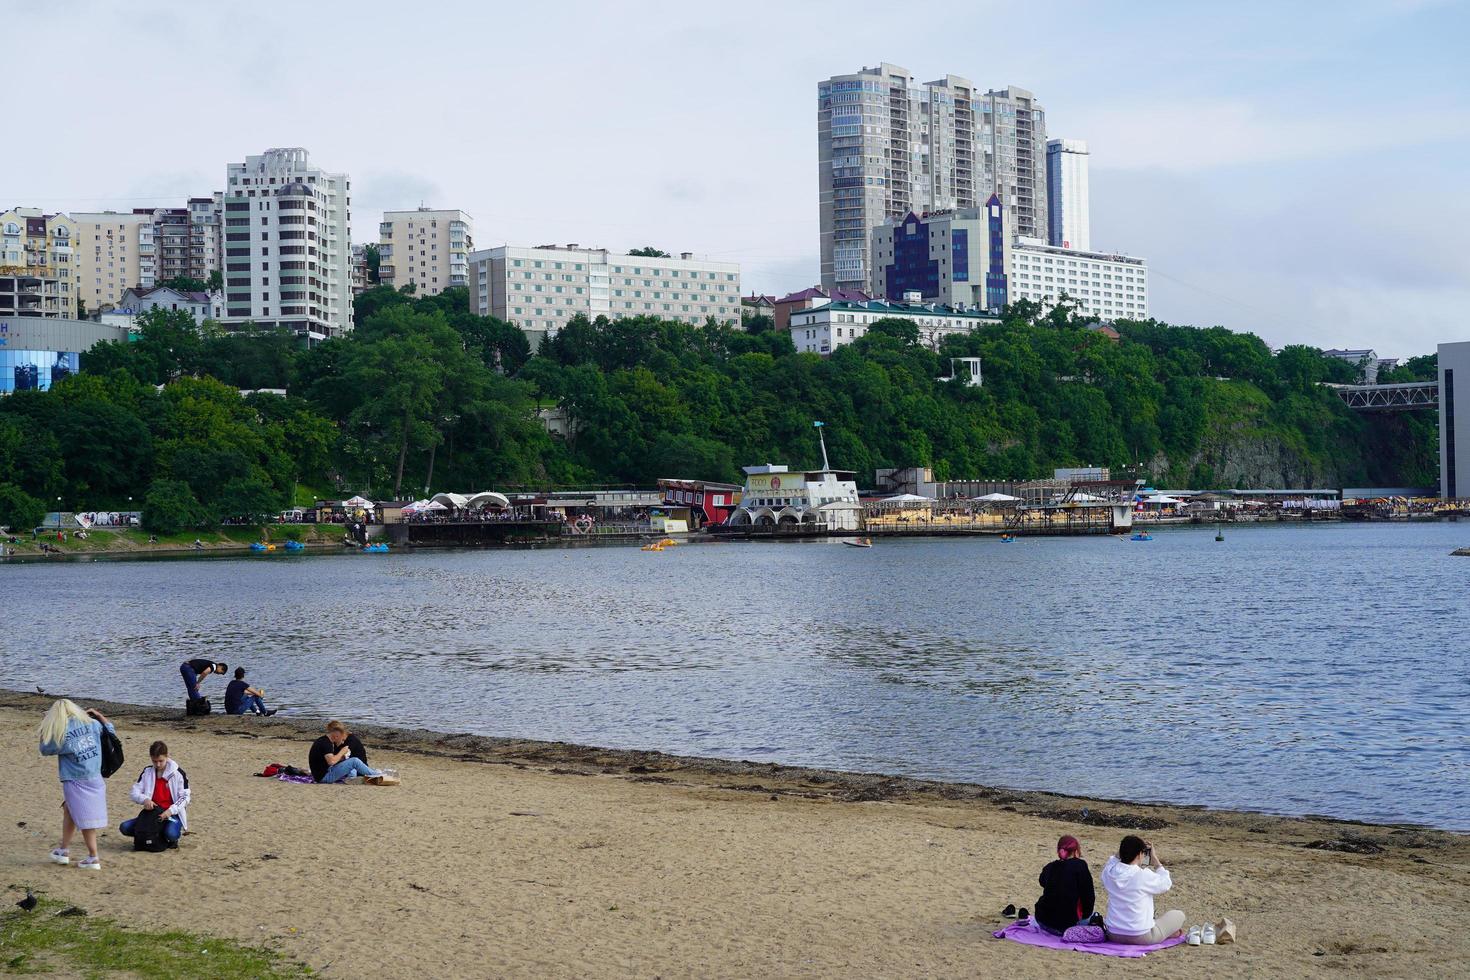 vladivostok, russie-6 juillet 2020 paysage urbain avec vue sur la plage de sable. photo